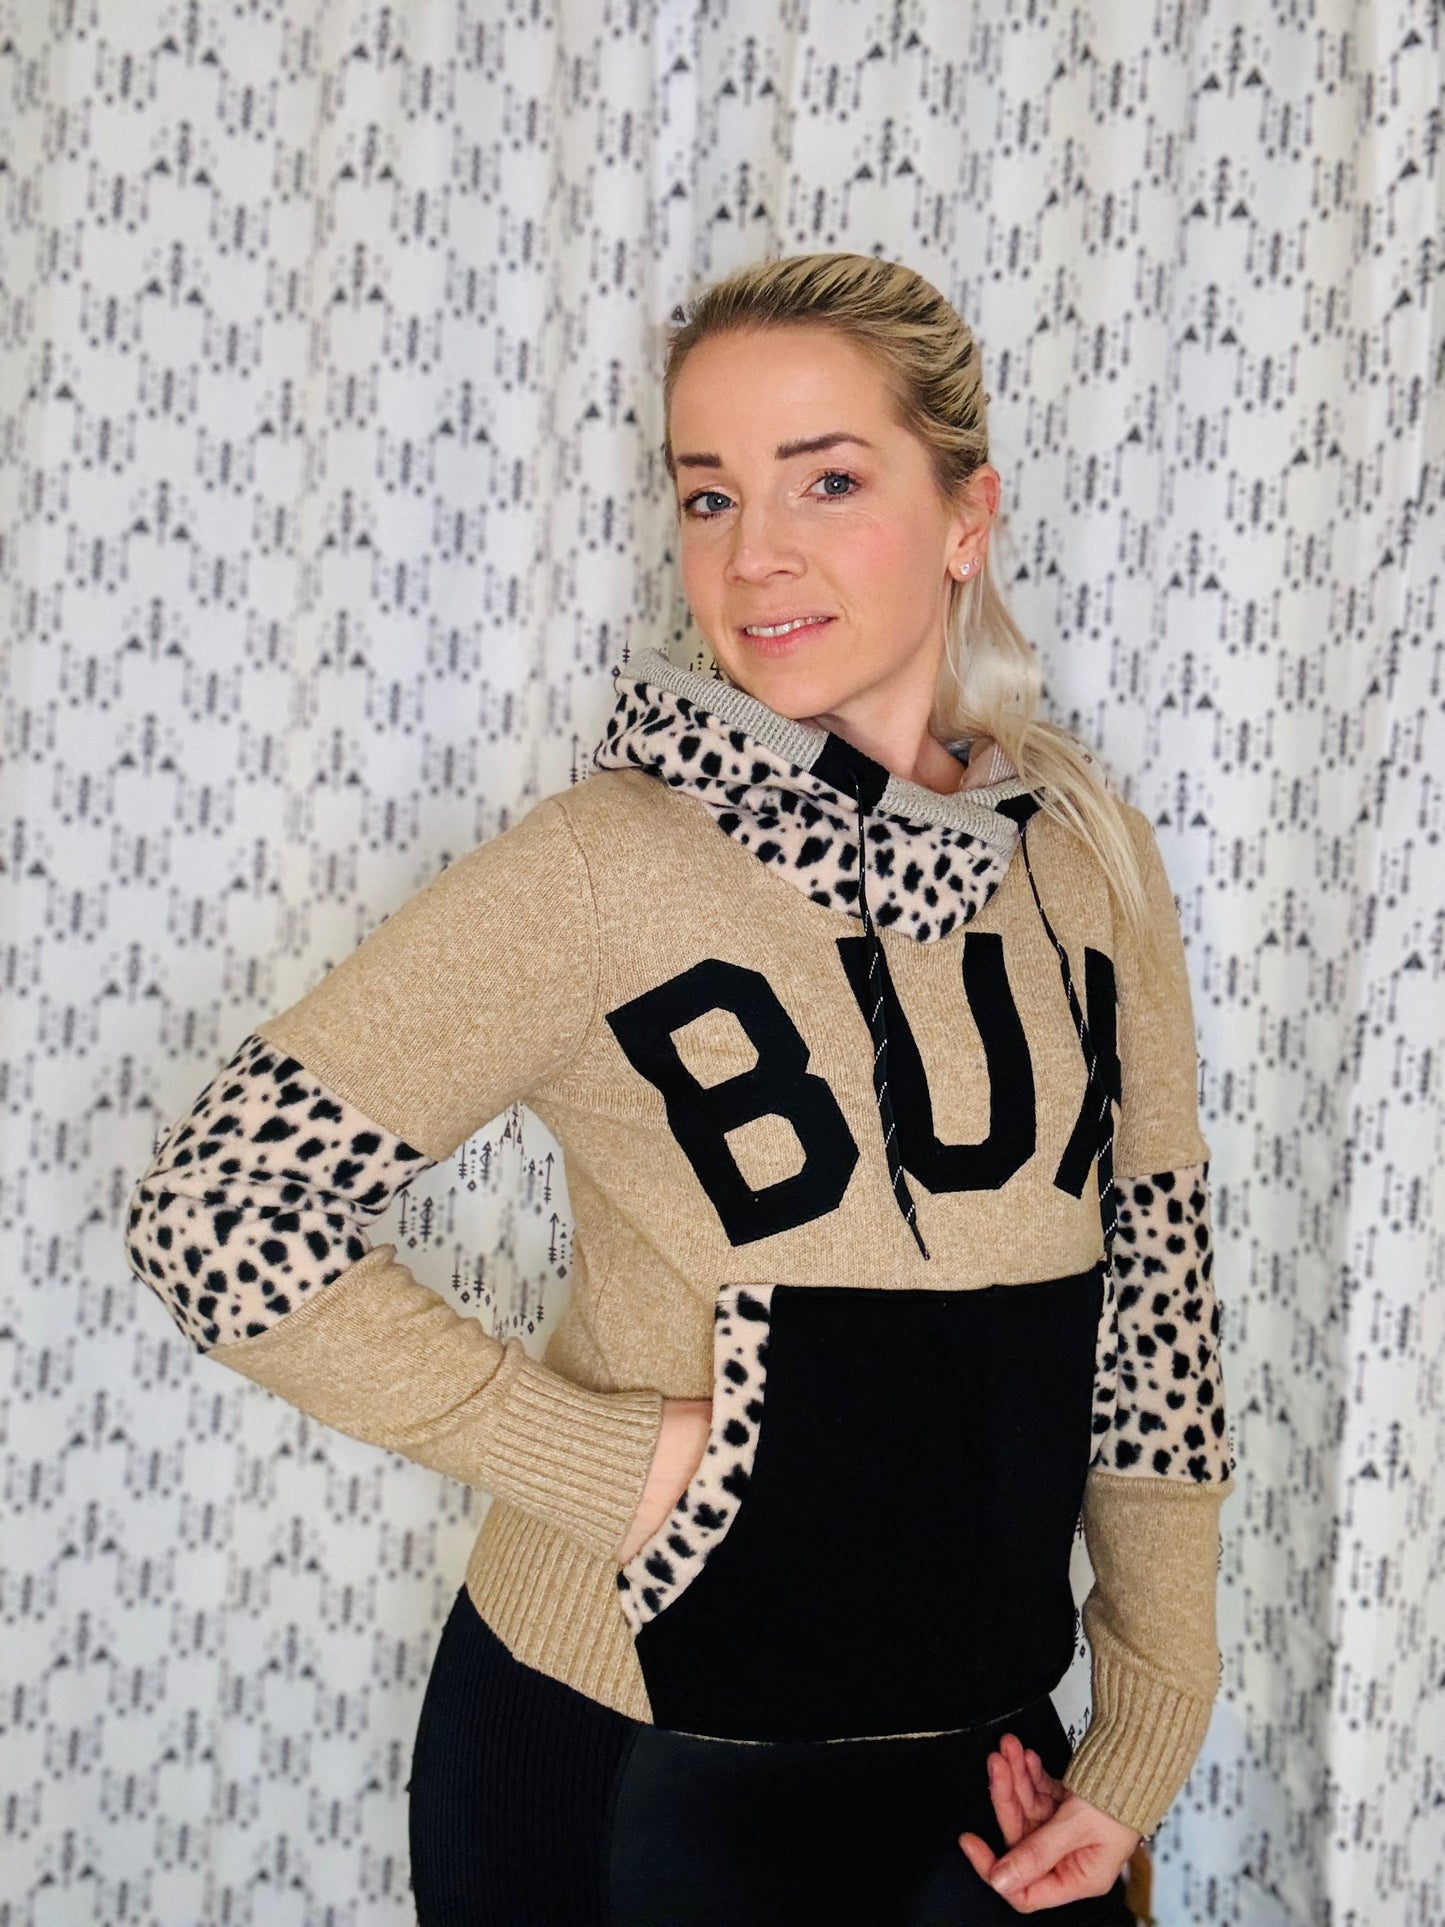 Black & Tan Leopard BUF Crop Sweater Hoodie Size- Women's S/M